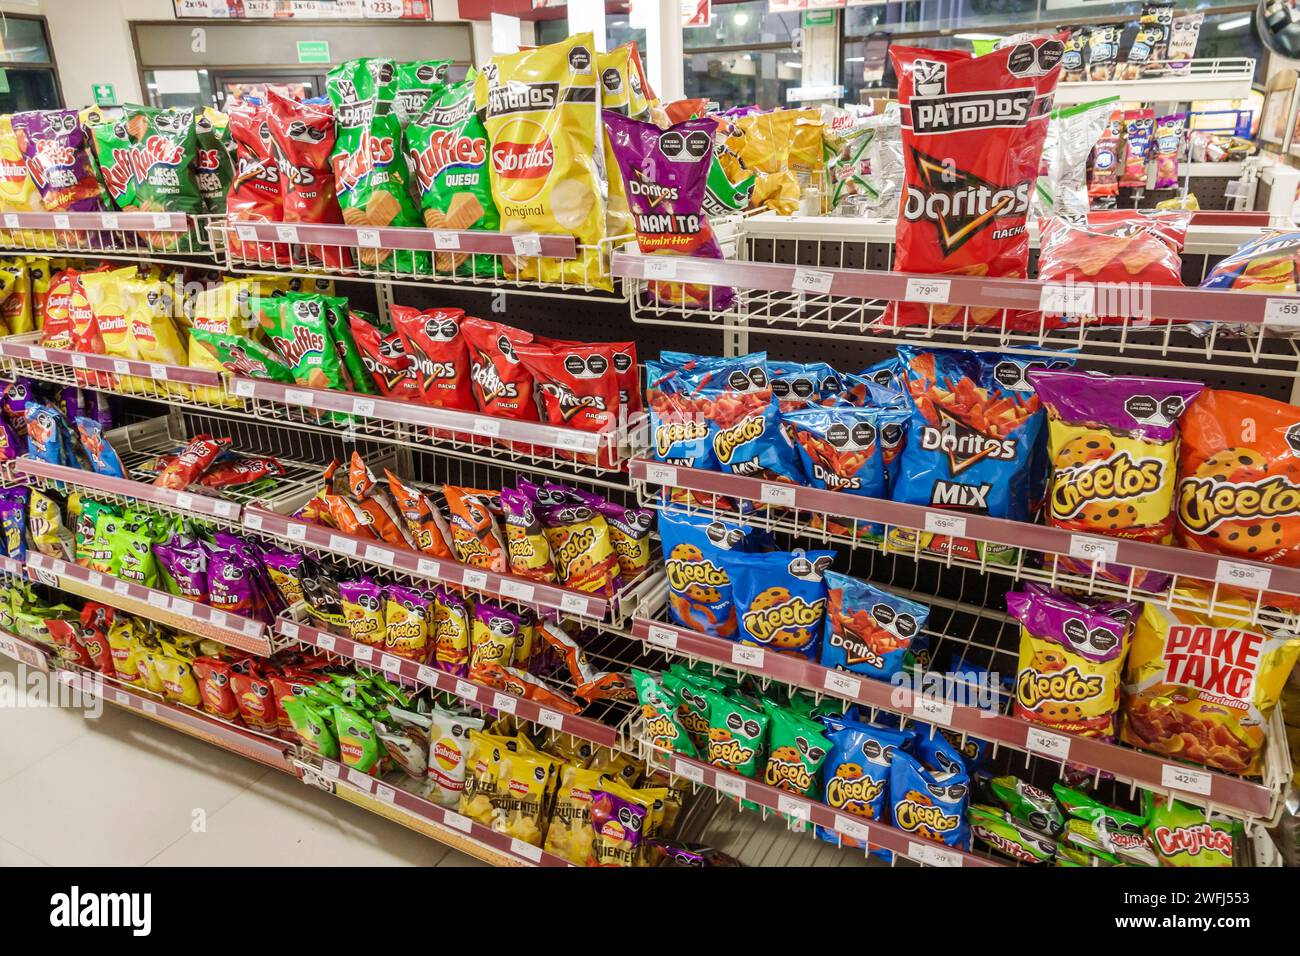 Merida Mexique, Centro, OXXO épicerie d'affaires de magasin d'alimentation de proximité, étagères d'affichage de vente intérieure, Cheetos Doritos casse-croûte casse-croûte de nourriture junk b Banque D'Images